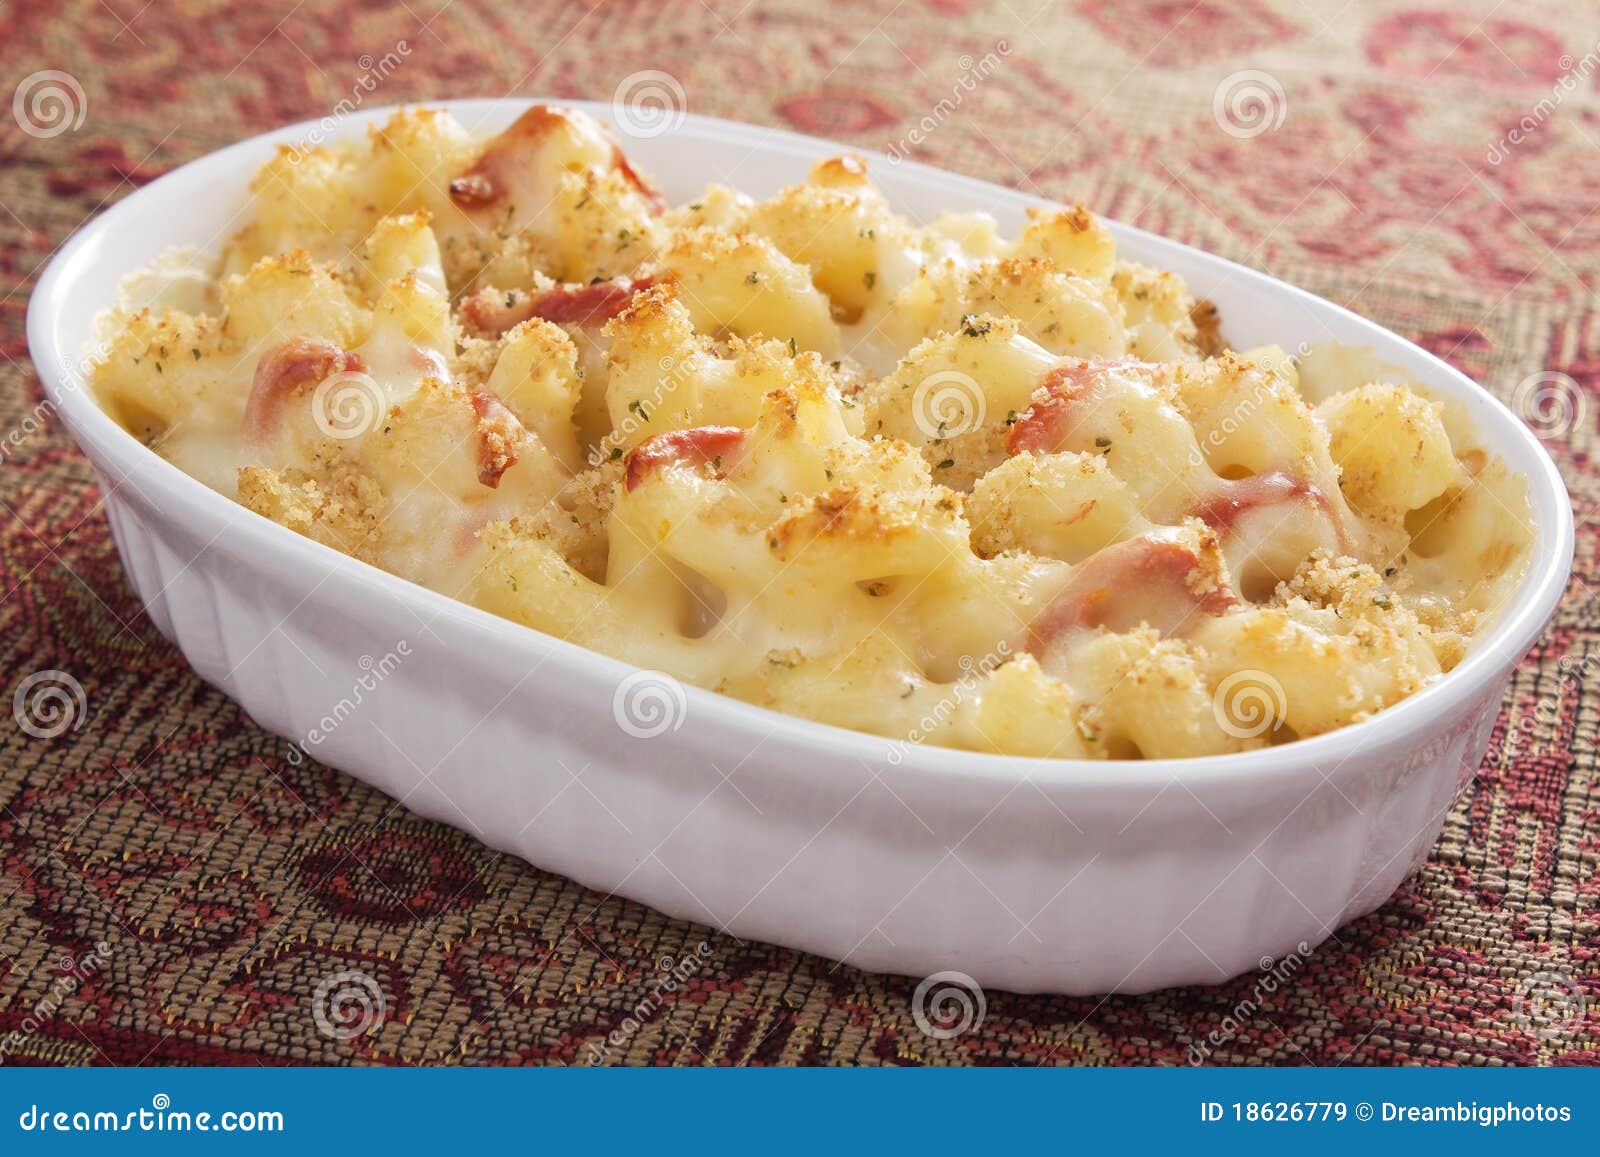 ντομάτα της MAC τυριών. ψημένες crumbs τυριών ψωμιού κρεμώδεις ξηρές macaroni ντομάτες ήλιων προβολόνε μοτσαρελών έπειτα που ολοκληρώνονται